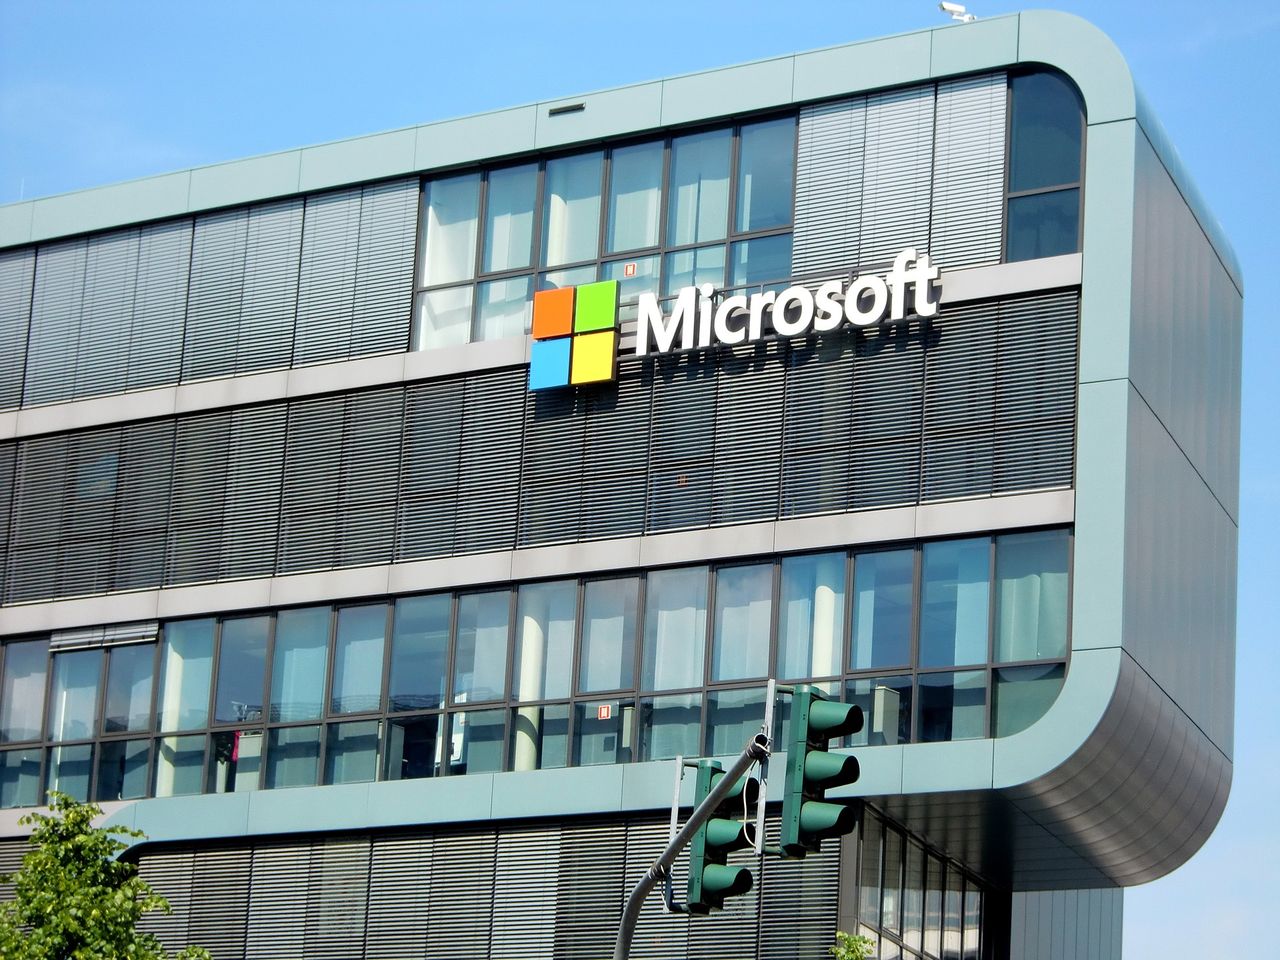 Webowe Office 365 nie dla Linuksa – Microsoft serwuje gorszy kod